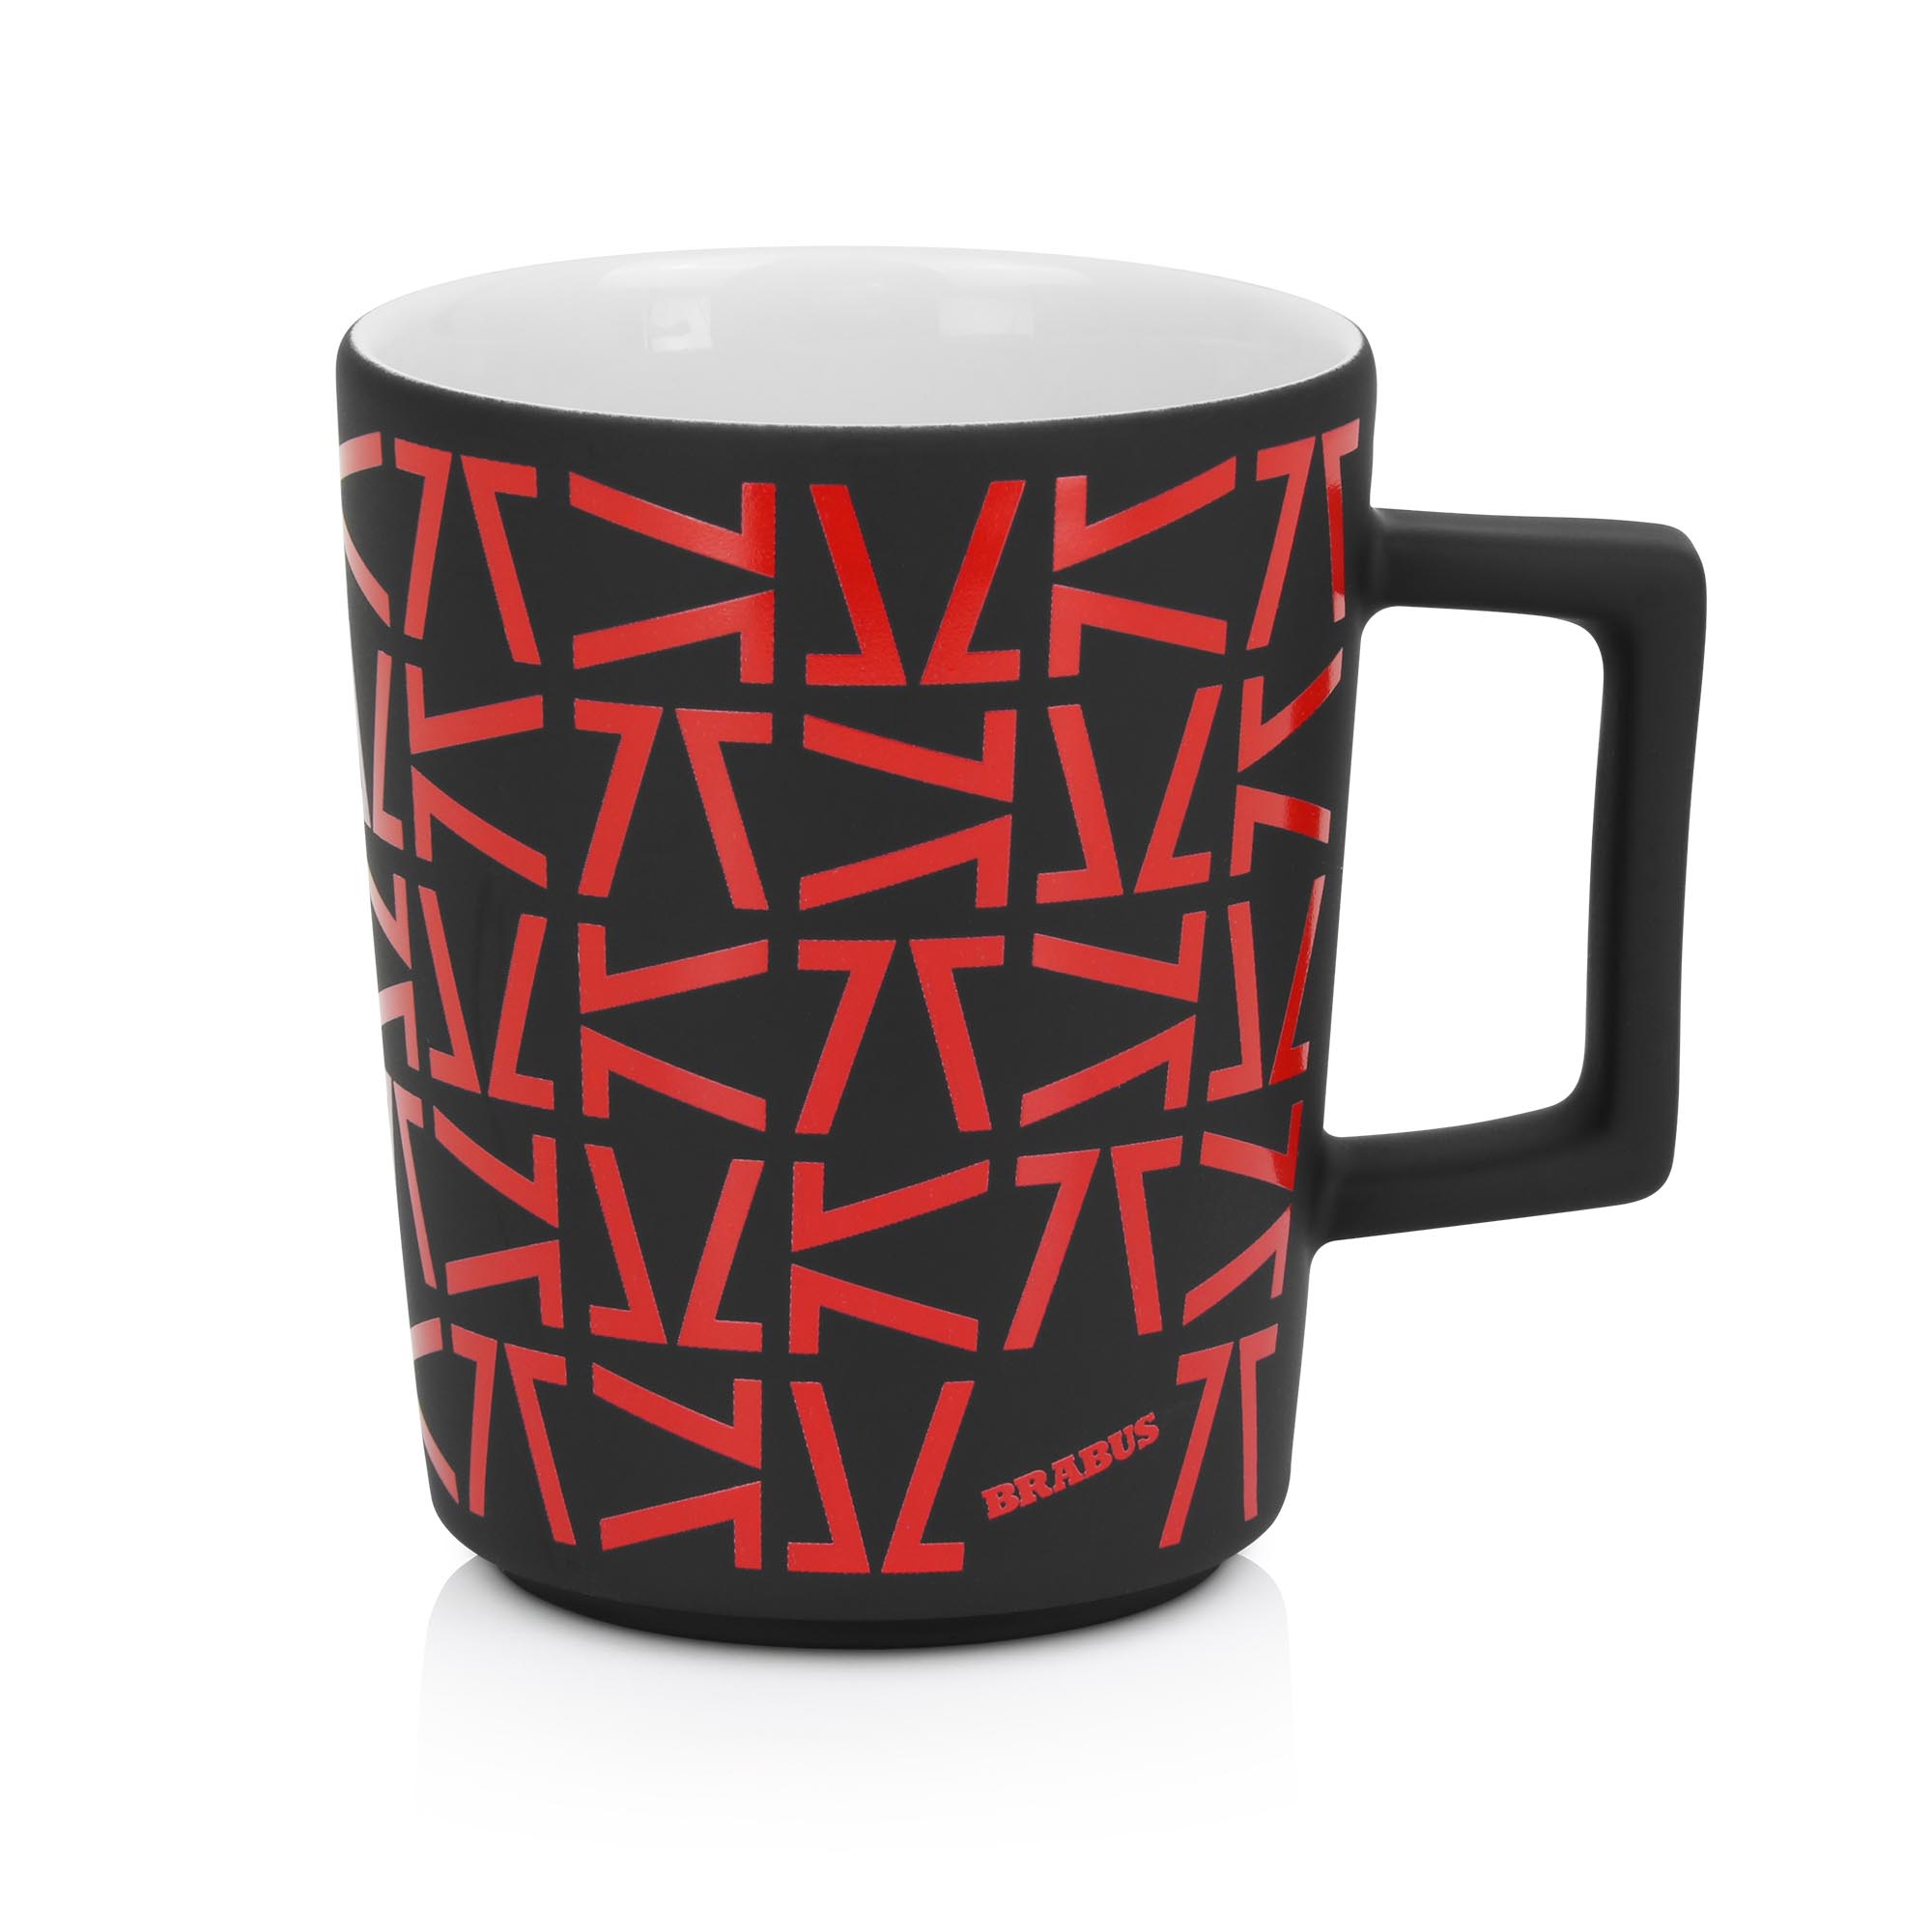 Monogram coffee mug 